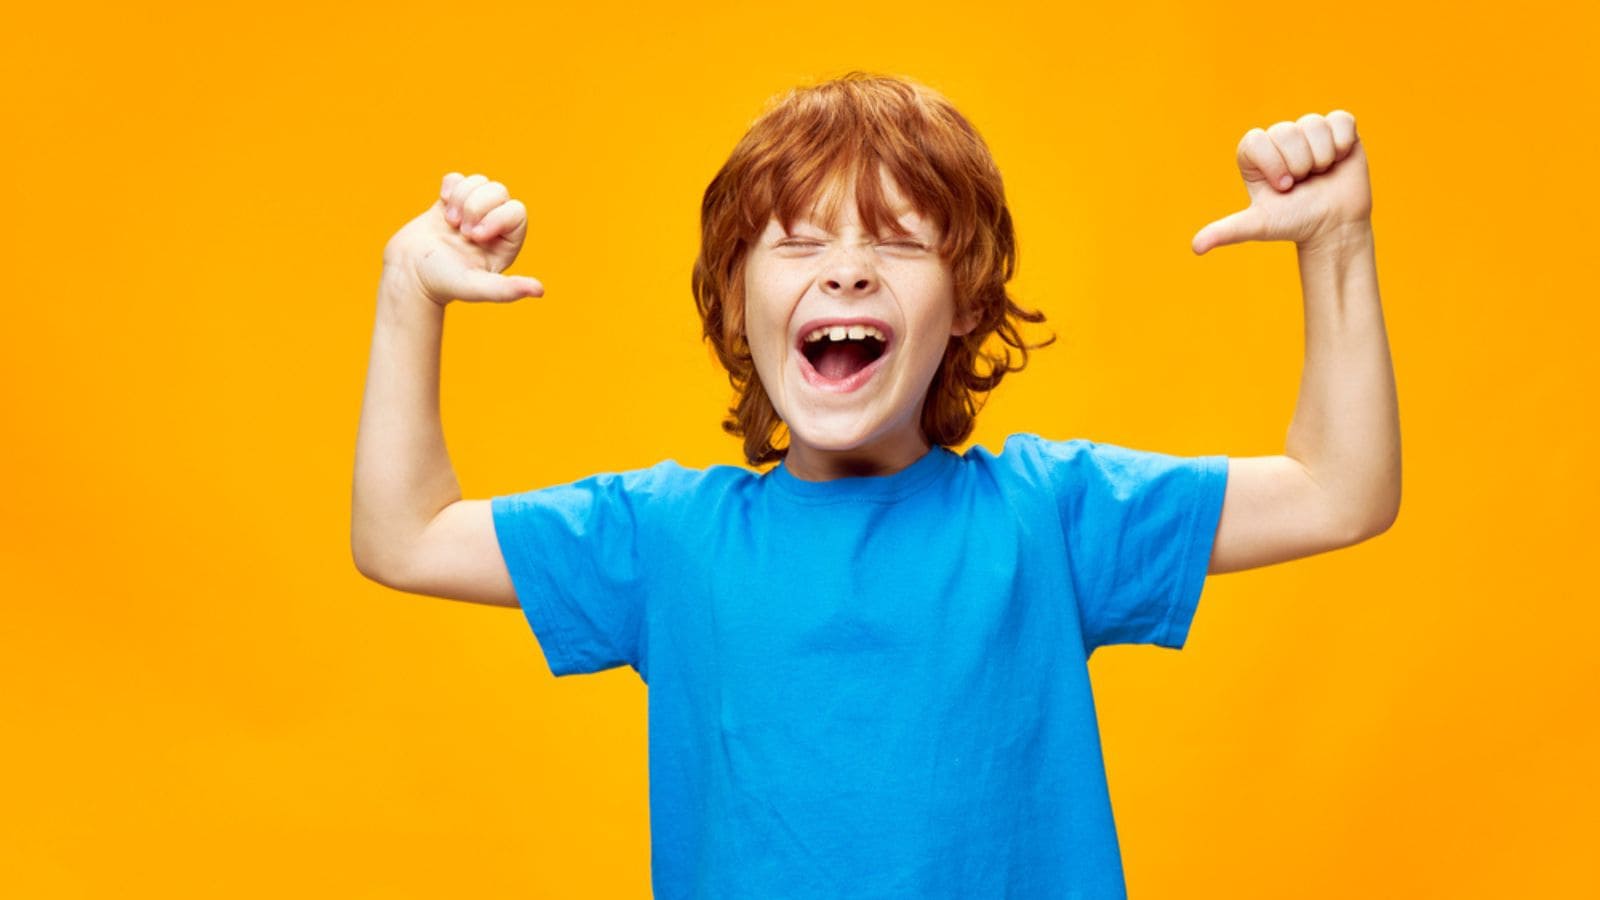 10 yếu tố thúc đẩy sự tự tin thời thơ ấu mà con cái chúng ta sẽ mang theo khi trưởng thành